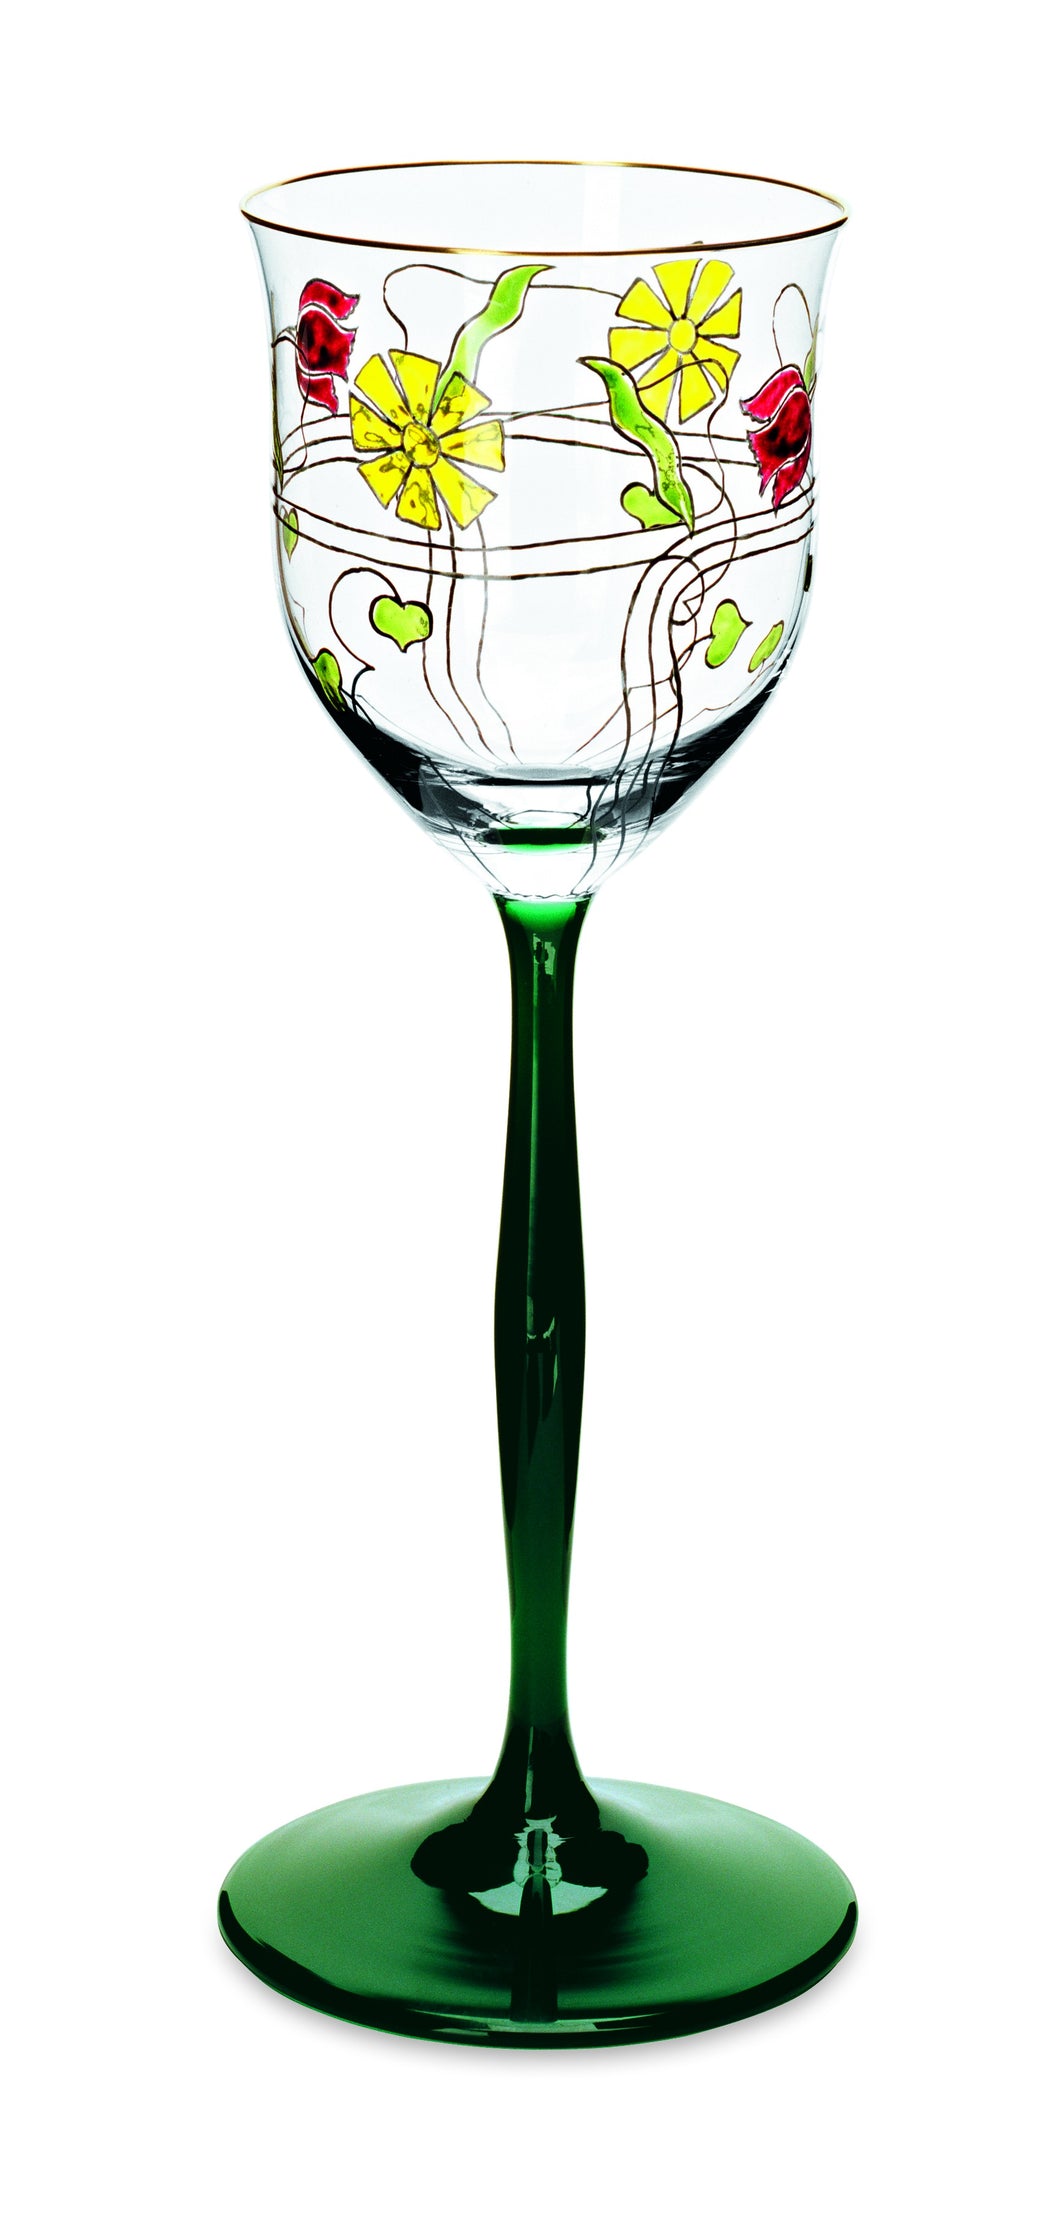 SERENADE jagdgrün/klar, Jugendstilmalerei - Weinglas 227 mm